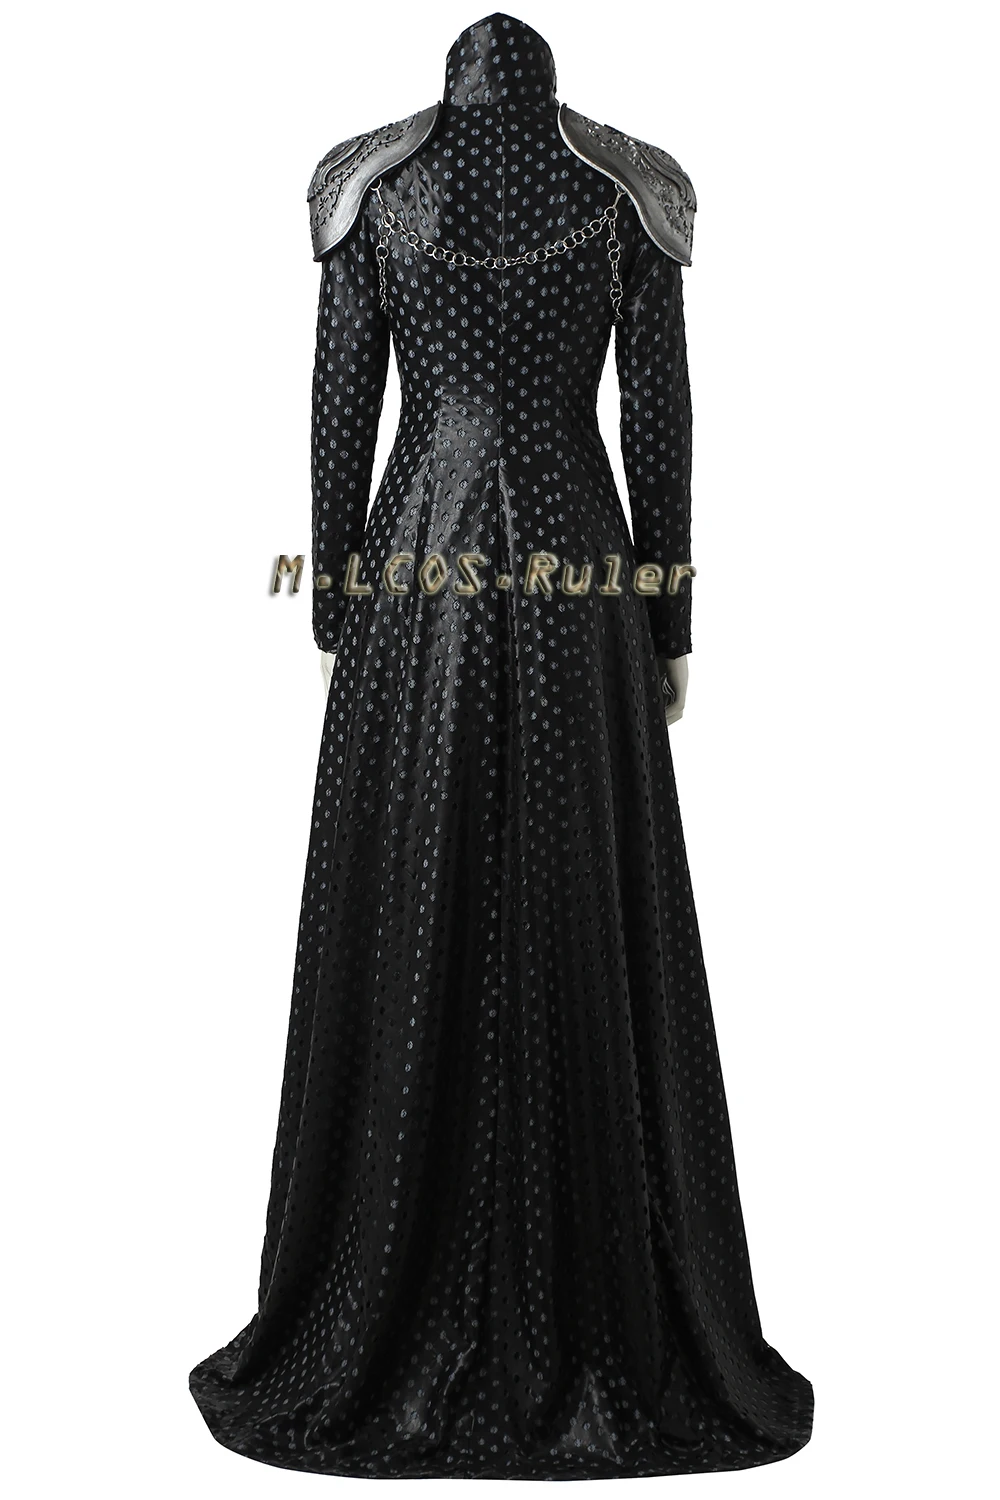 Хэллоуин Косплей Игра престолов сезон 7 Косплей Костюм Cersei Lannister Косплей наряд женское платье костюм на заказ